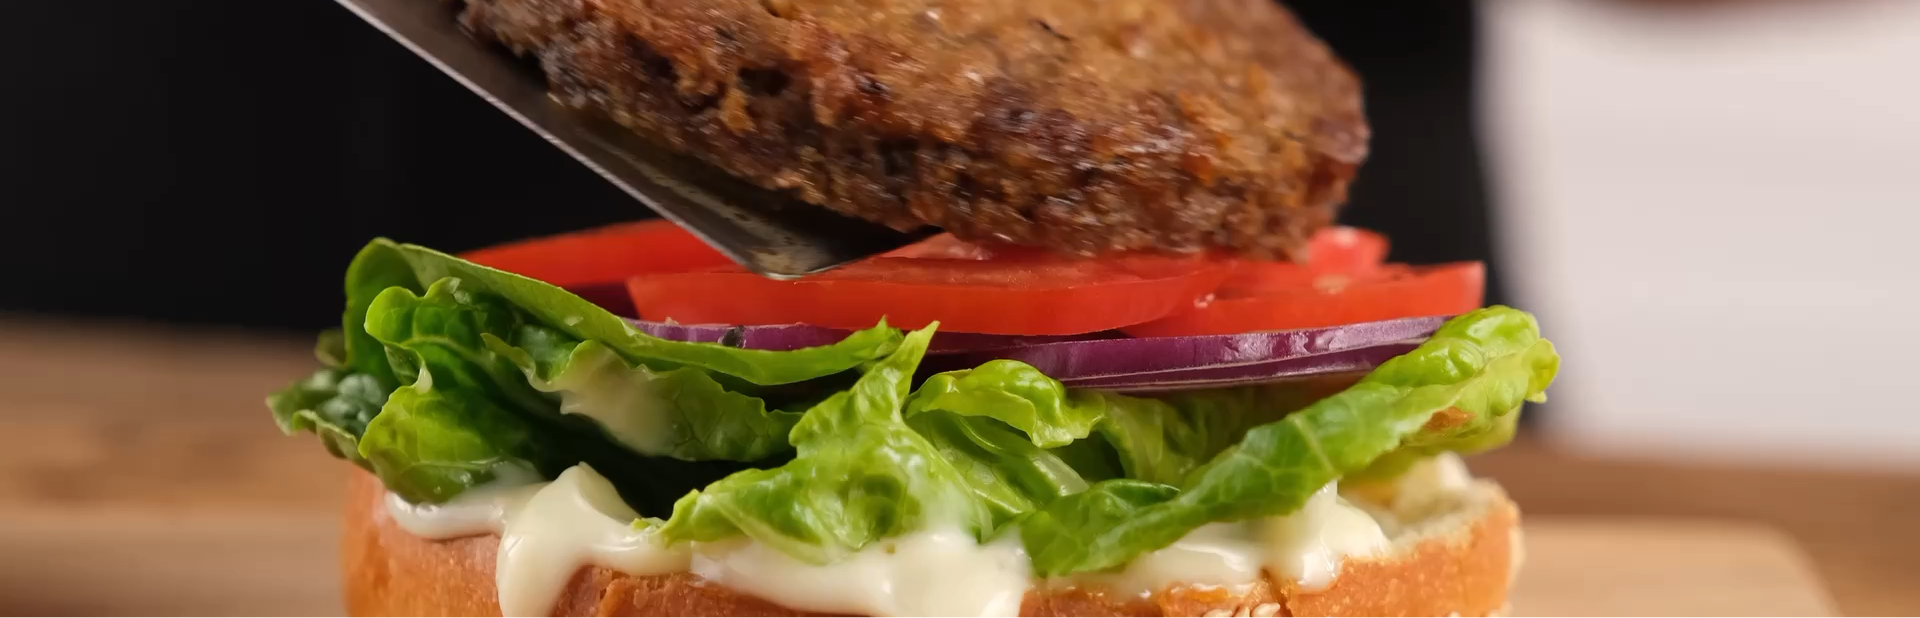 a close up of a burger